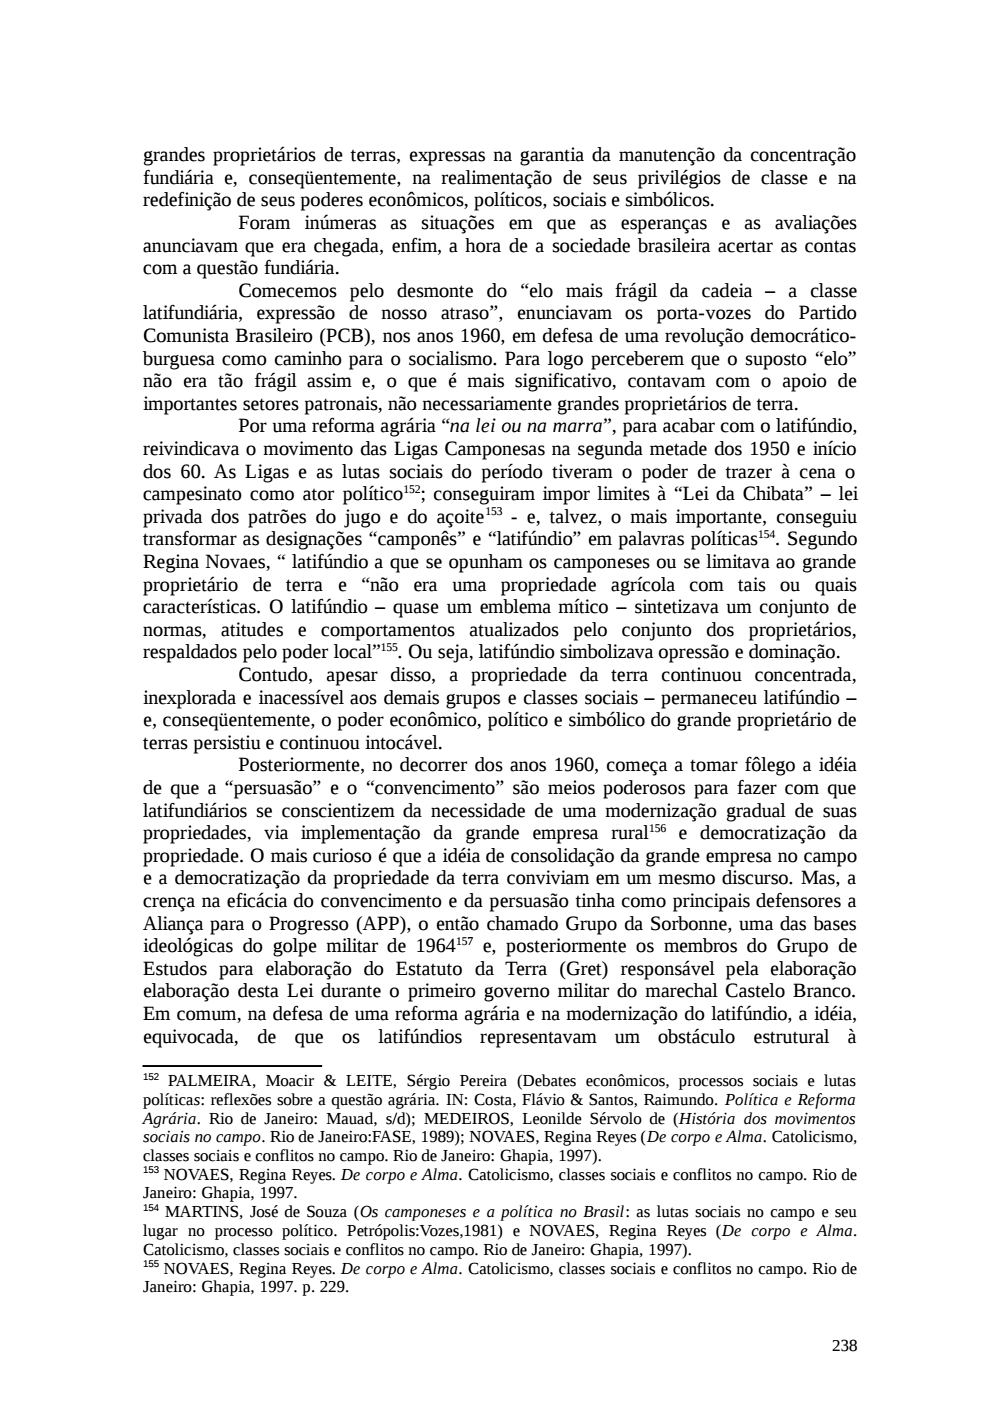 Page 238 from Relatório final da comissão